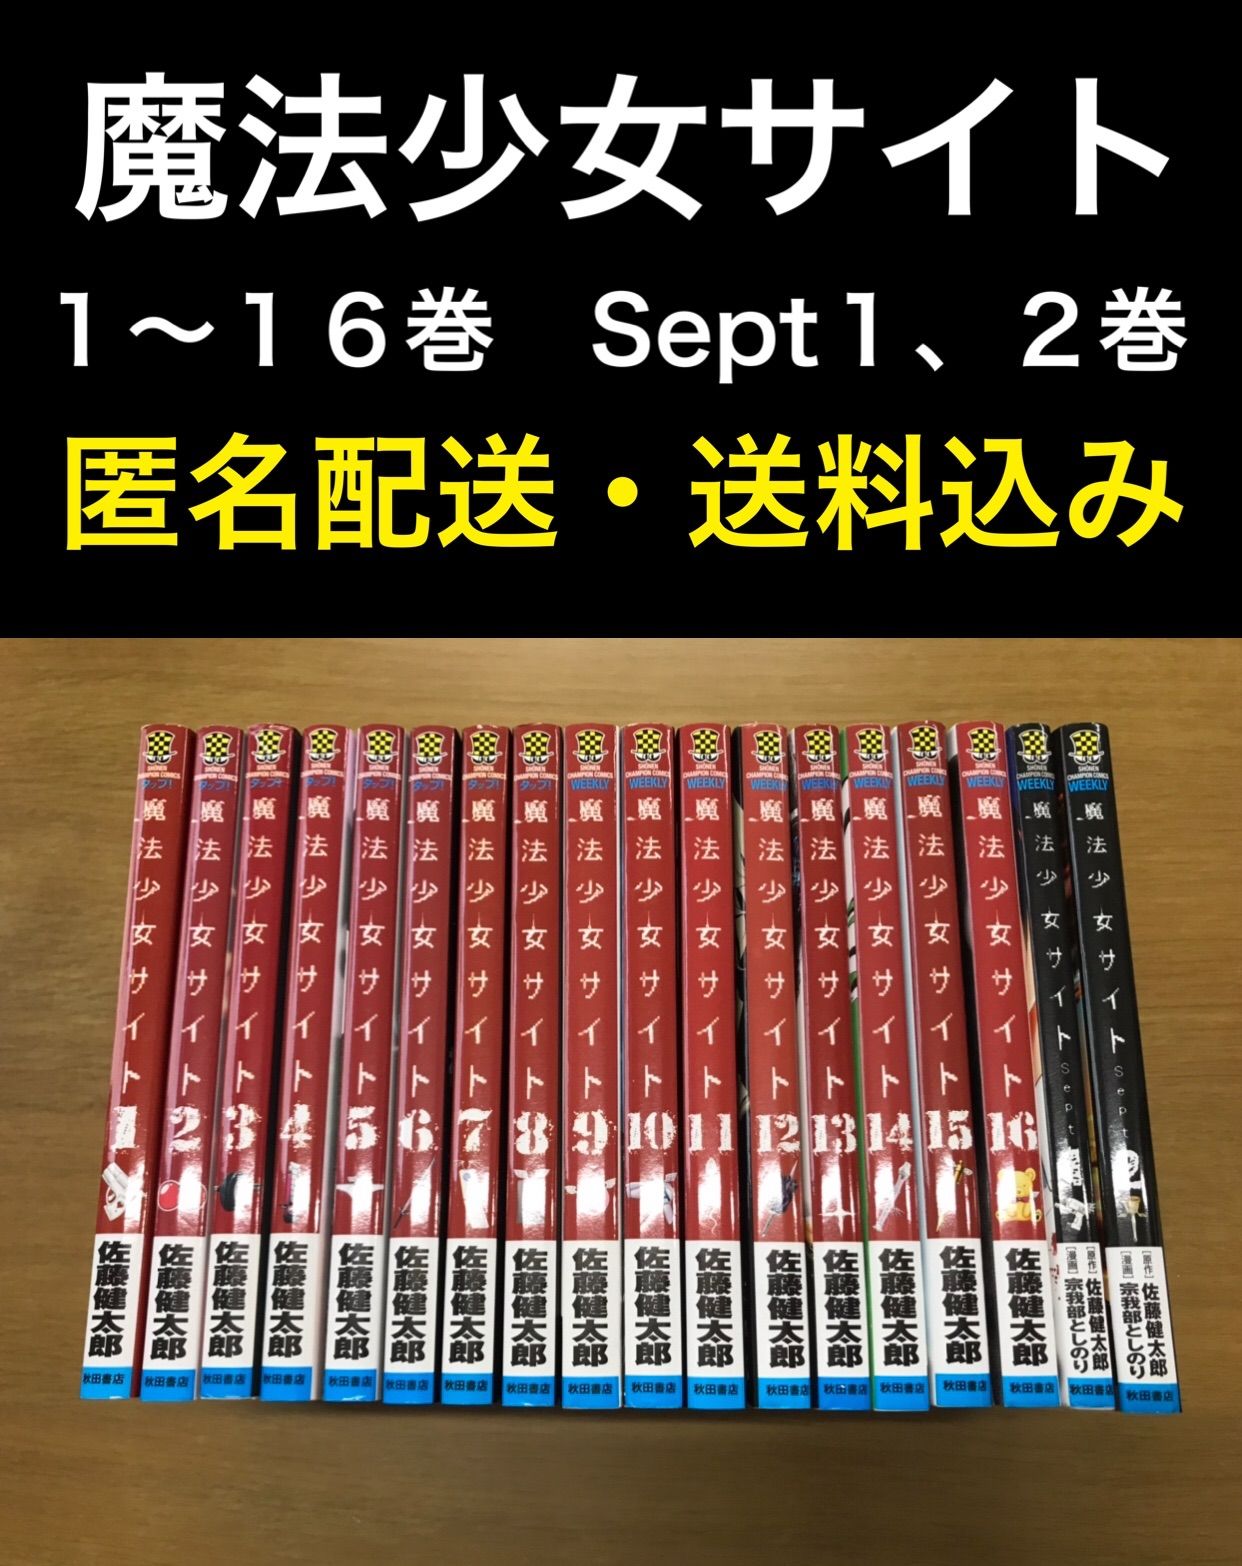 魔法少女サイト 1〜16巻 Sept 1〜2巻 - 福まさ商店メルカリストア